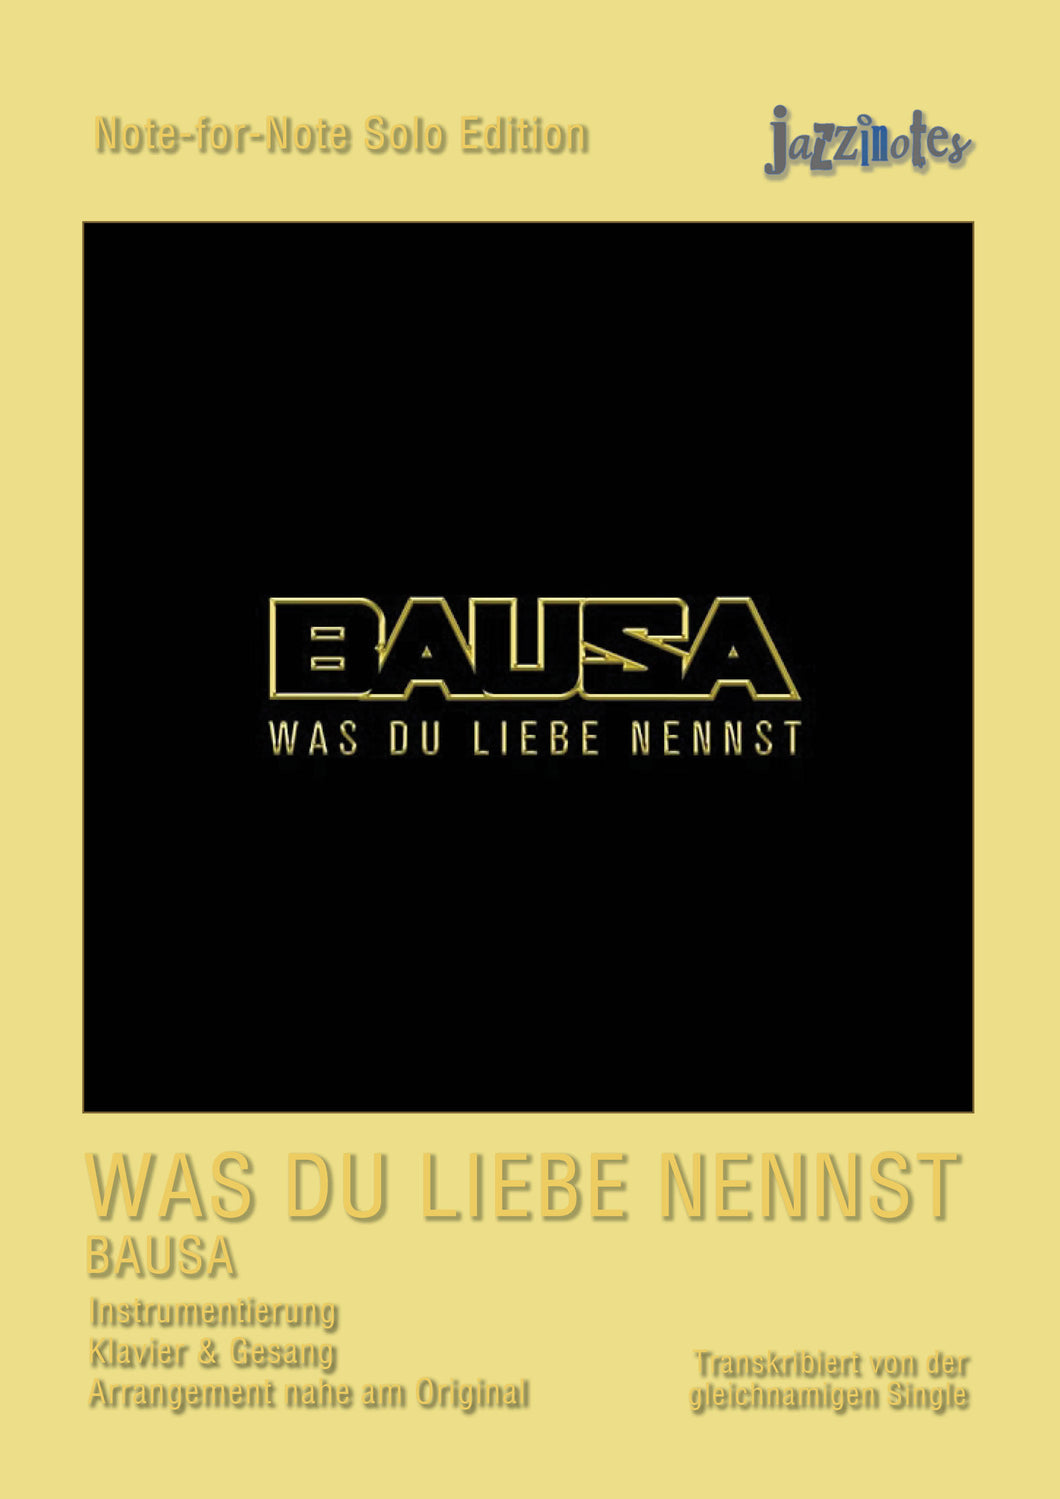 BAUSA: Was du Liebe nennst - Sheet Music Download